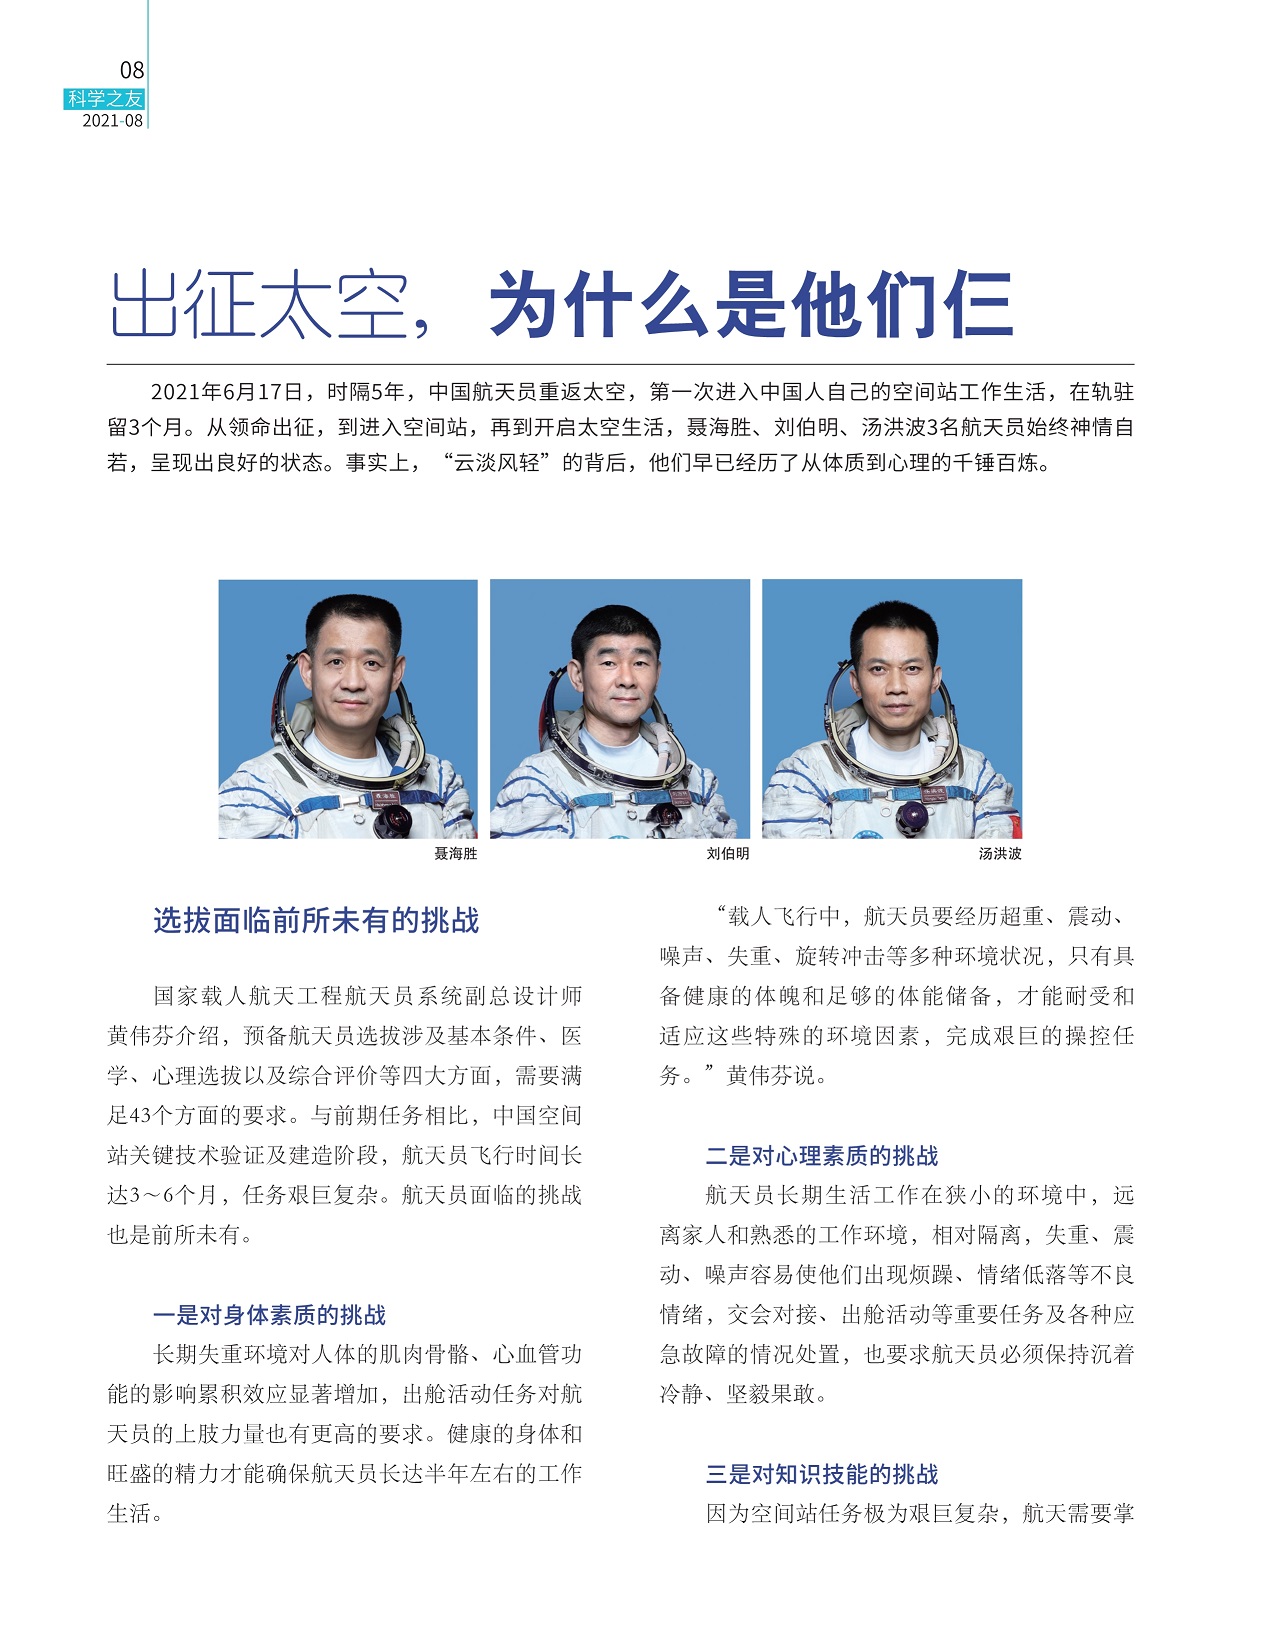 中国航天员重返太空,选拔面临前所未有的挑战